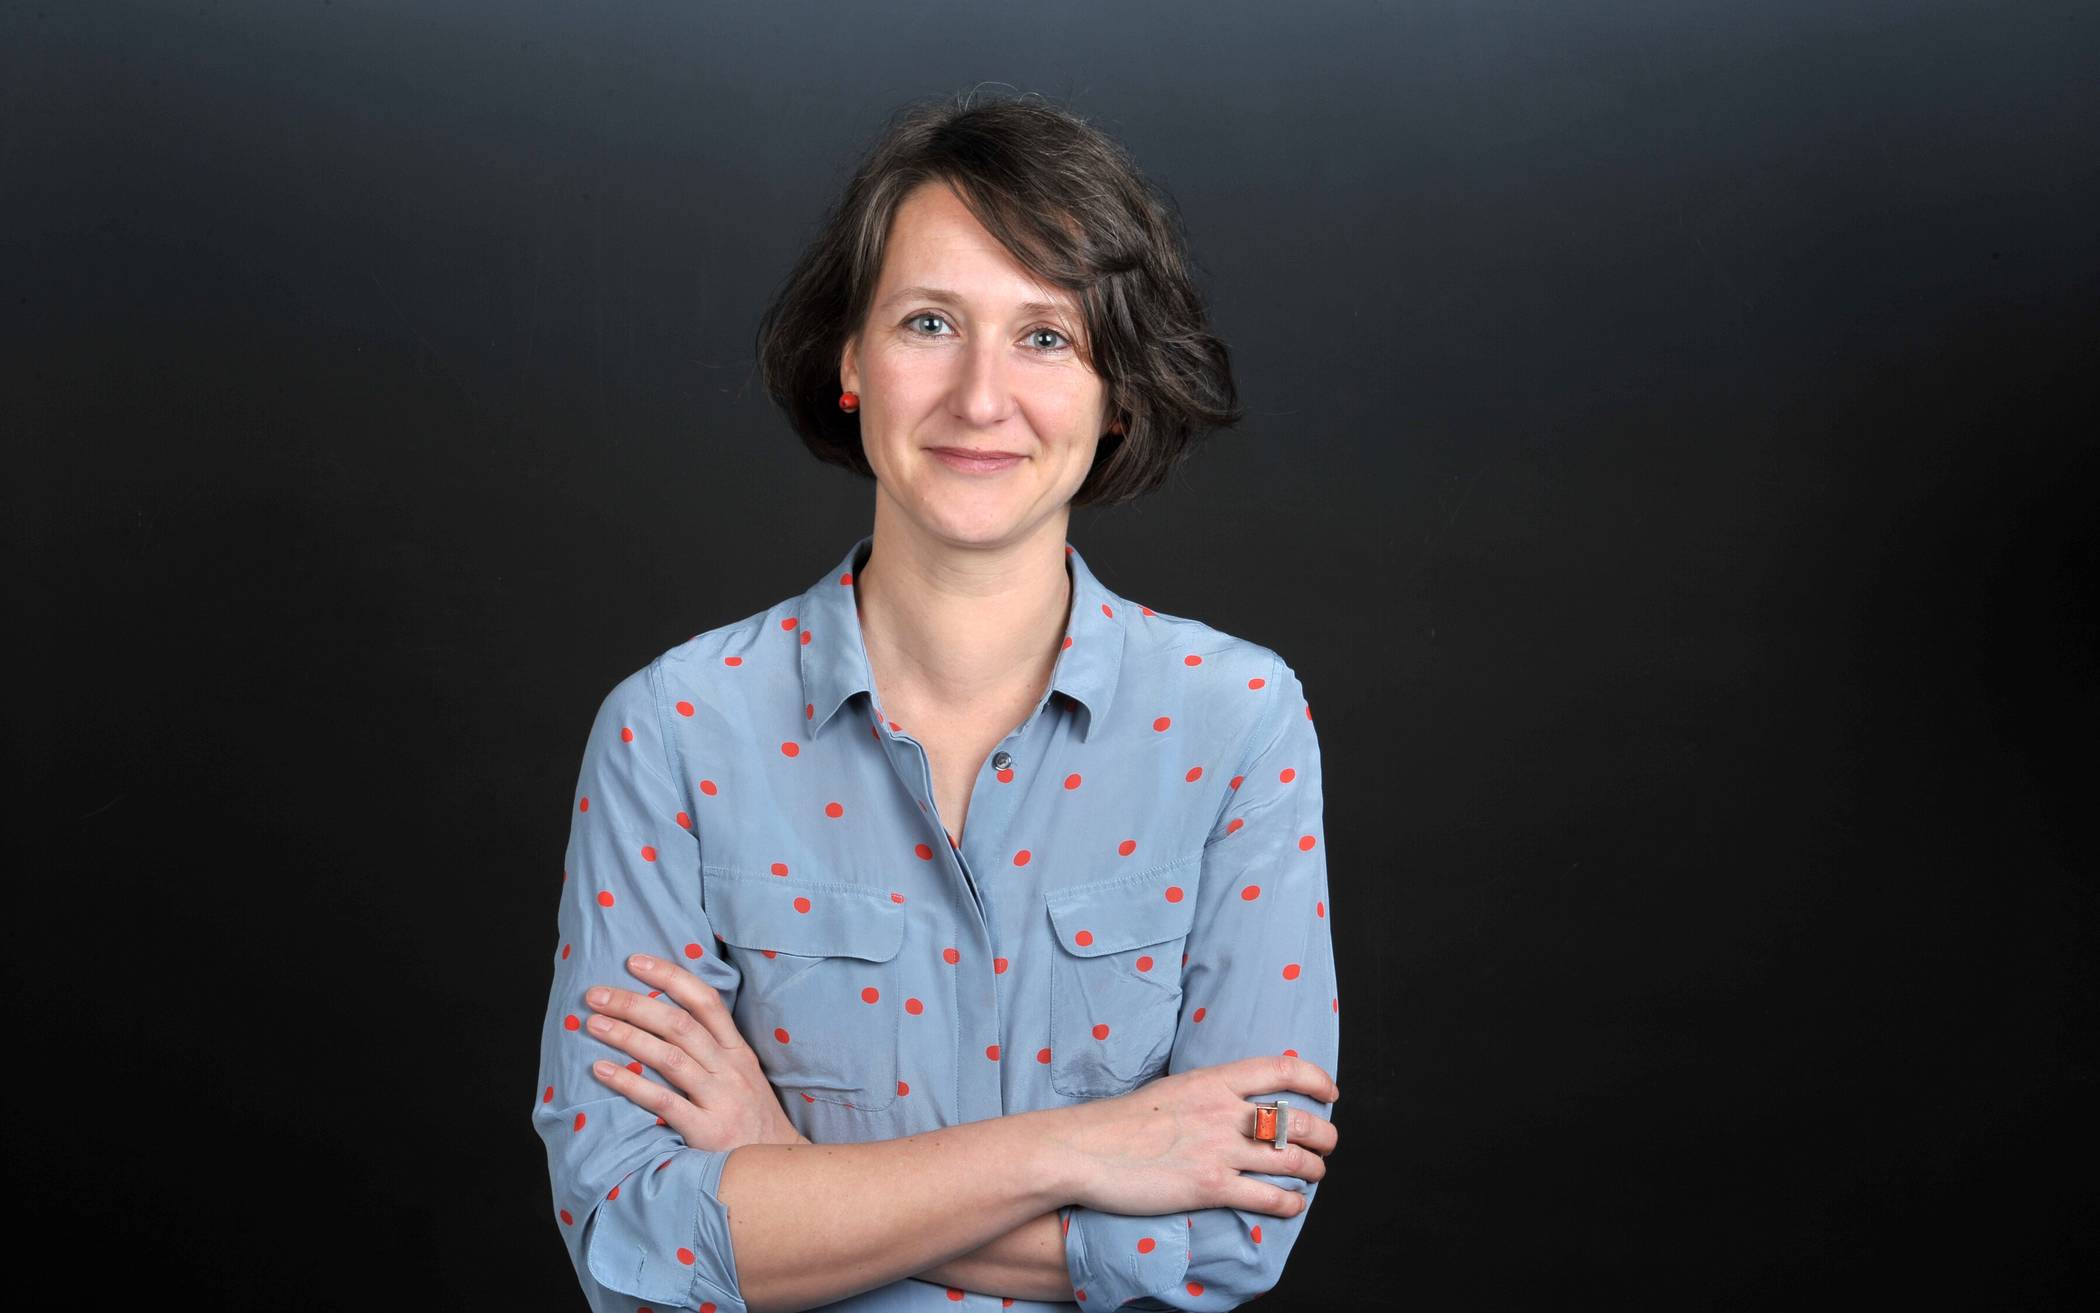  Dr. Claudia Schrader ist neue Professorin für Lehren und Lernen mit digitalen Medien an der Bergischen Universität Wuppertal. 